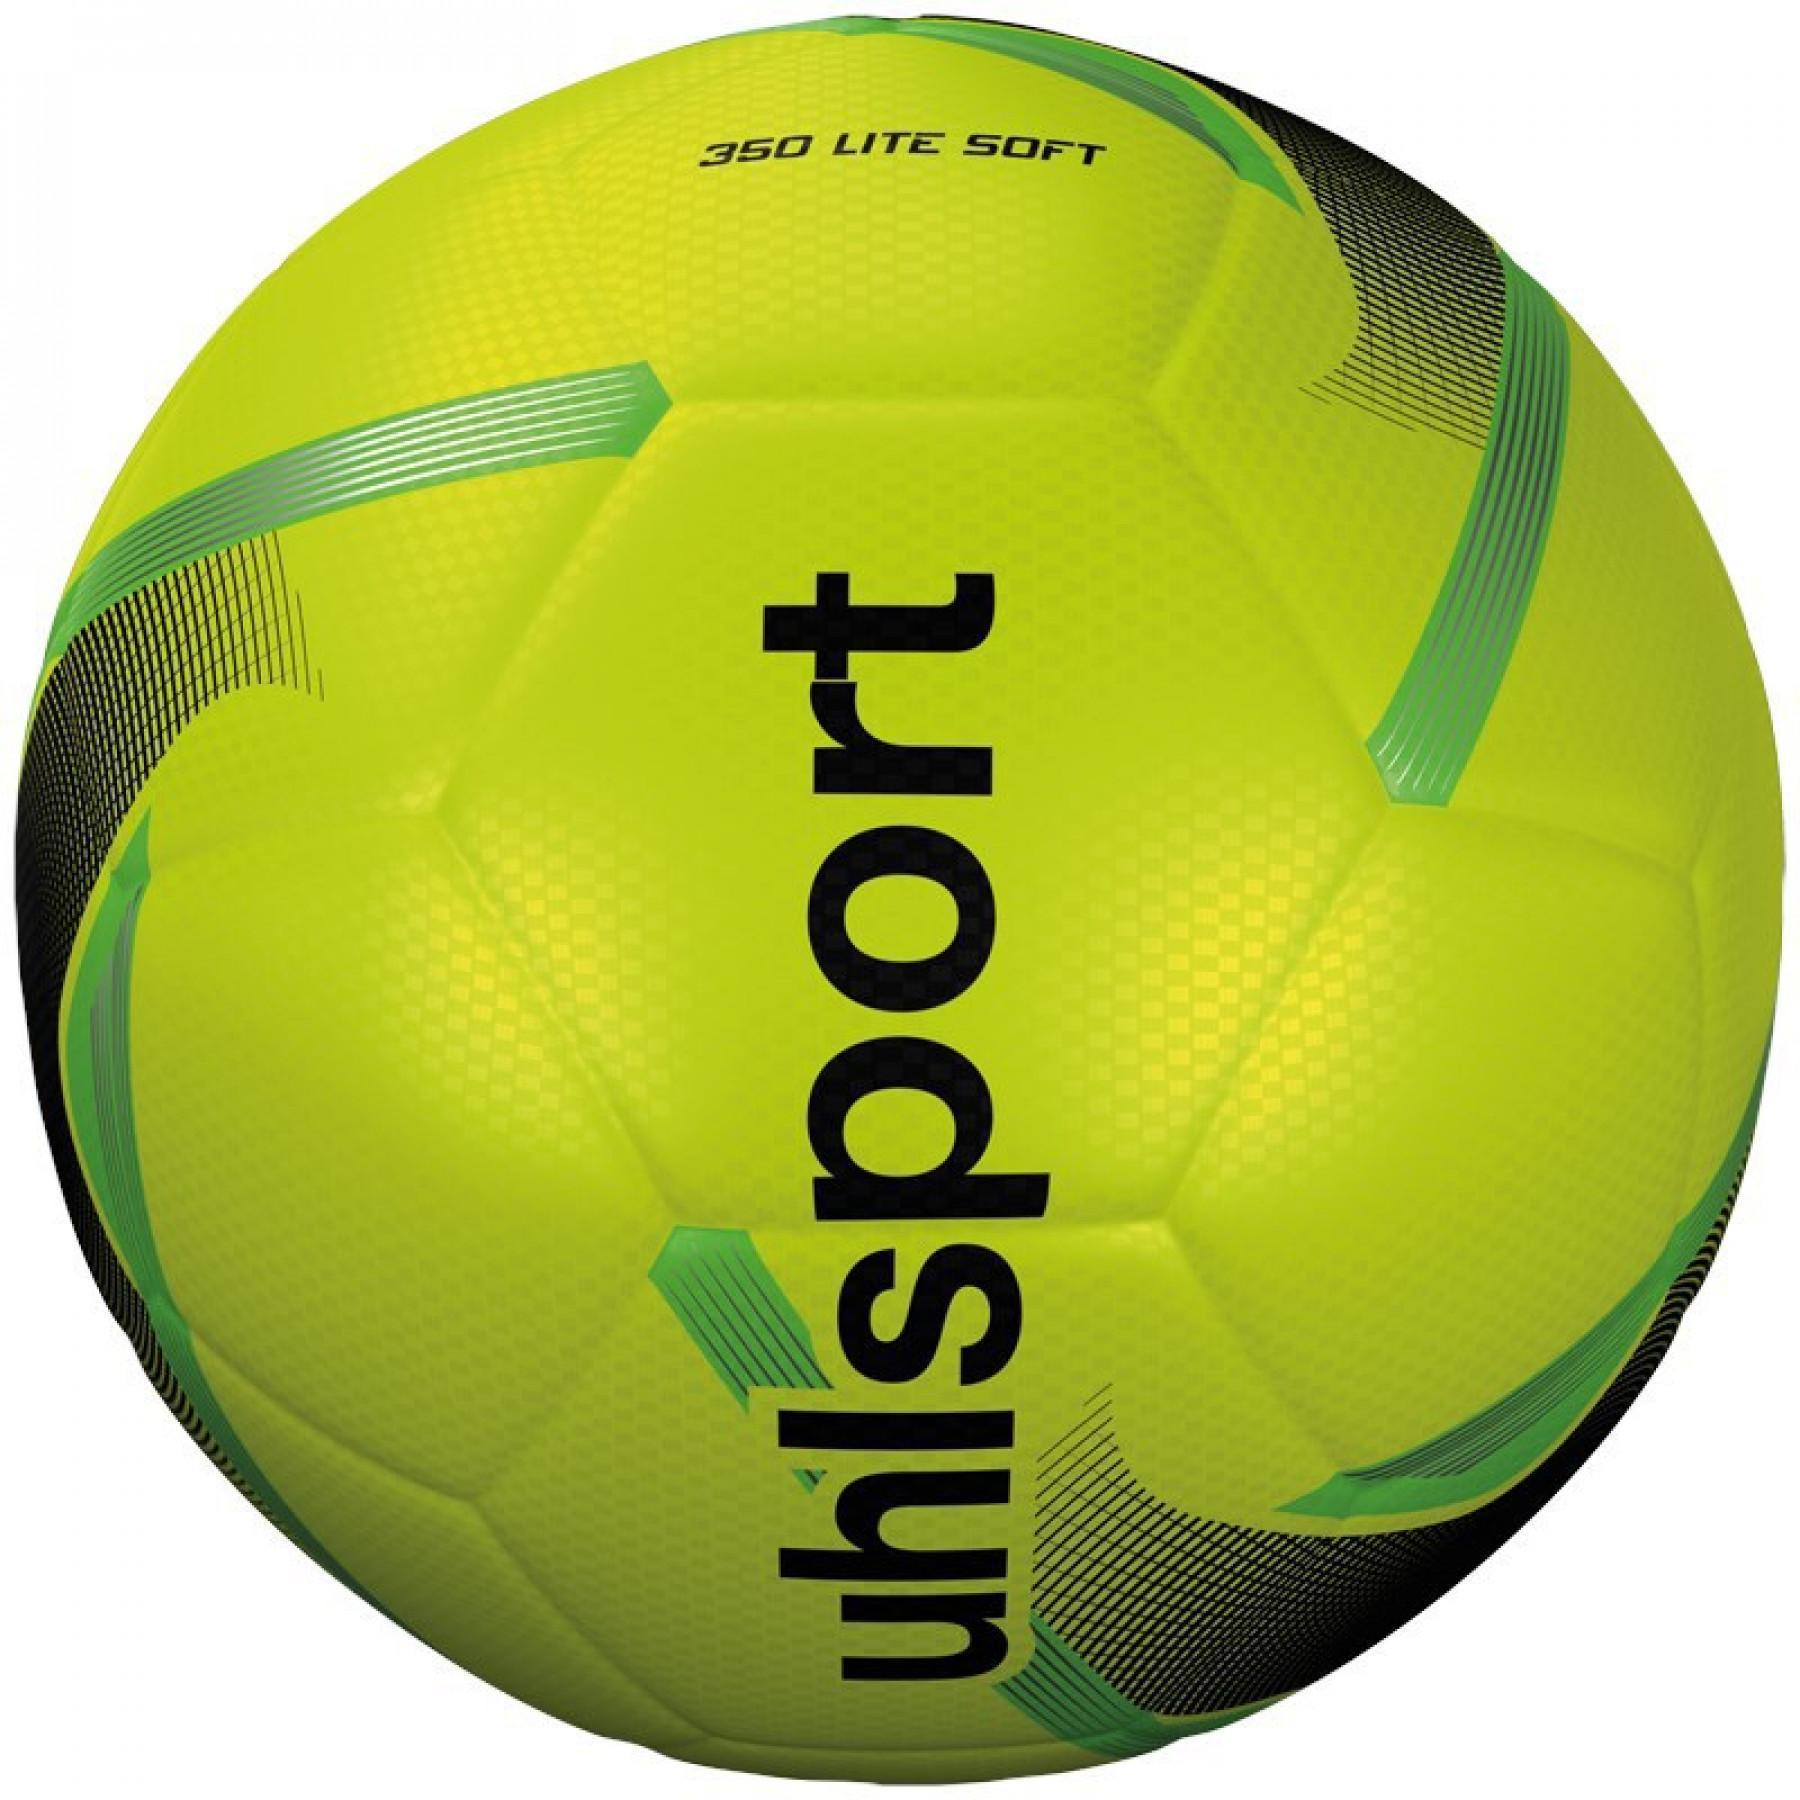 Balón niños Uhlsport 350 Lite Soft